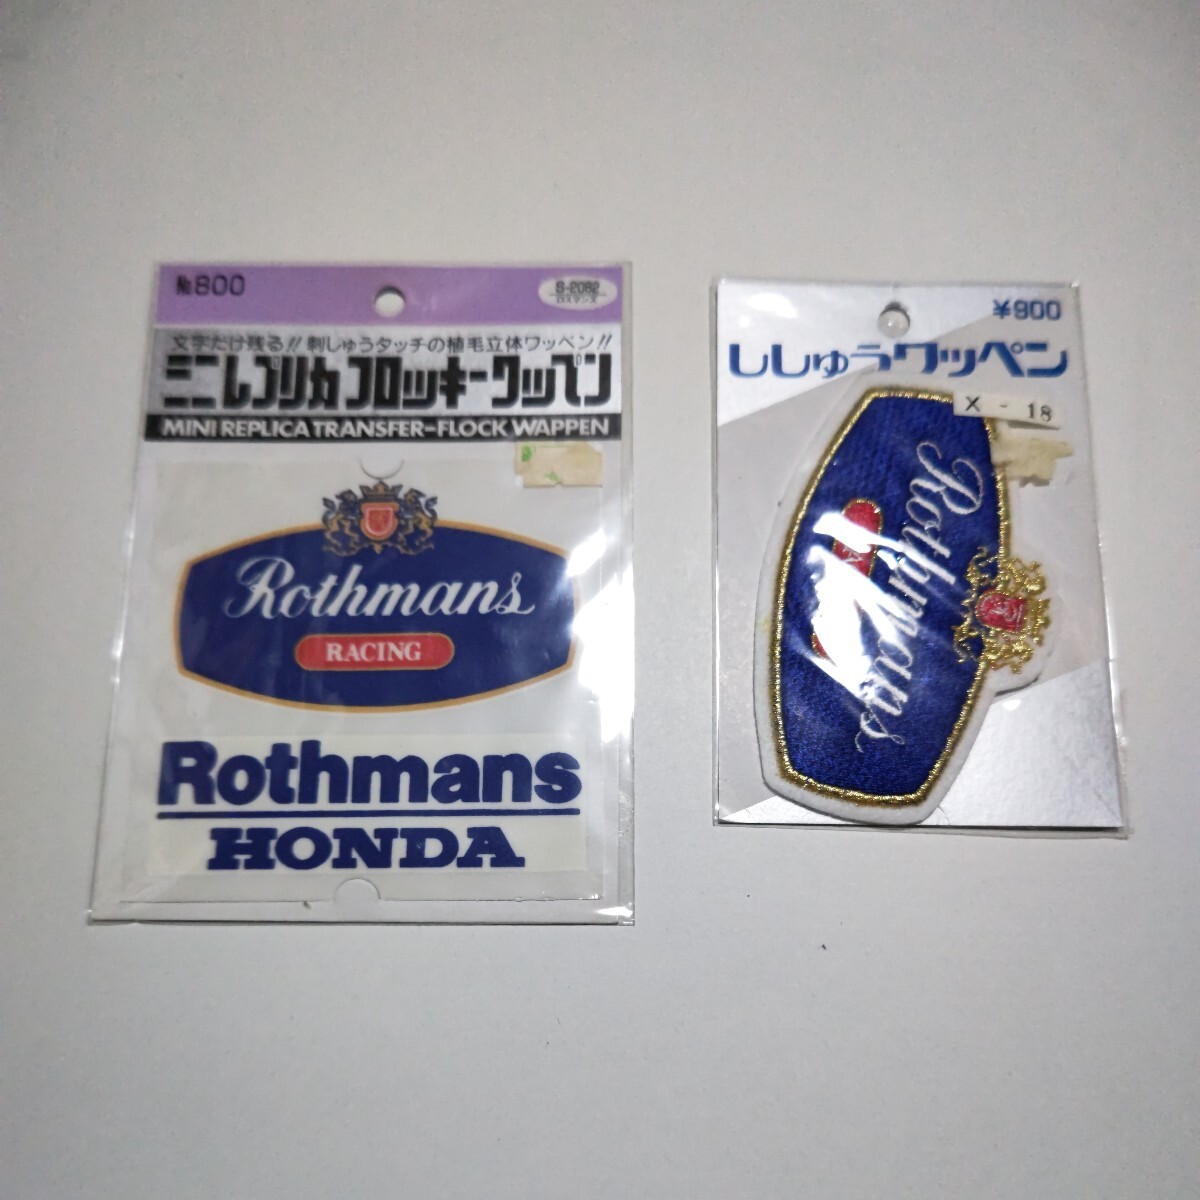 ホンダ ロスマンズ ワッペンHONDA Rothmans RACINGワッペン2種類 ロゴ刺繍ワッペンの画像1